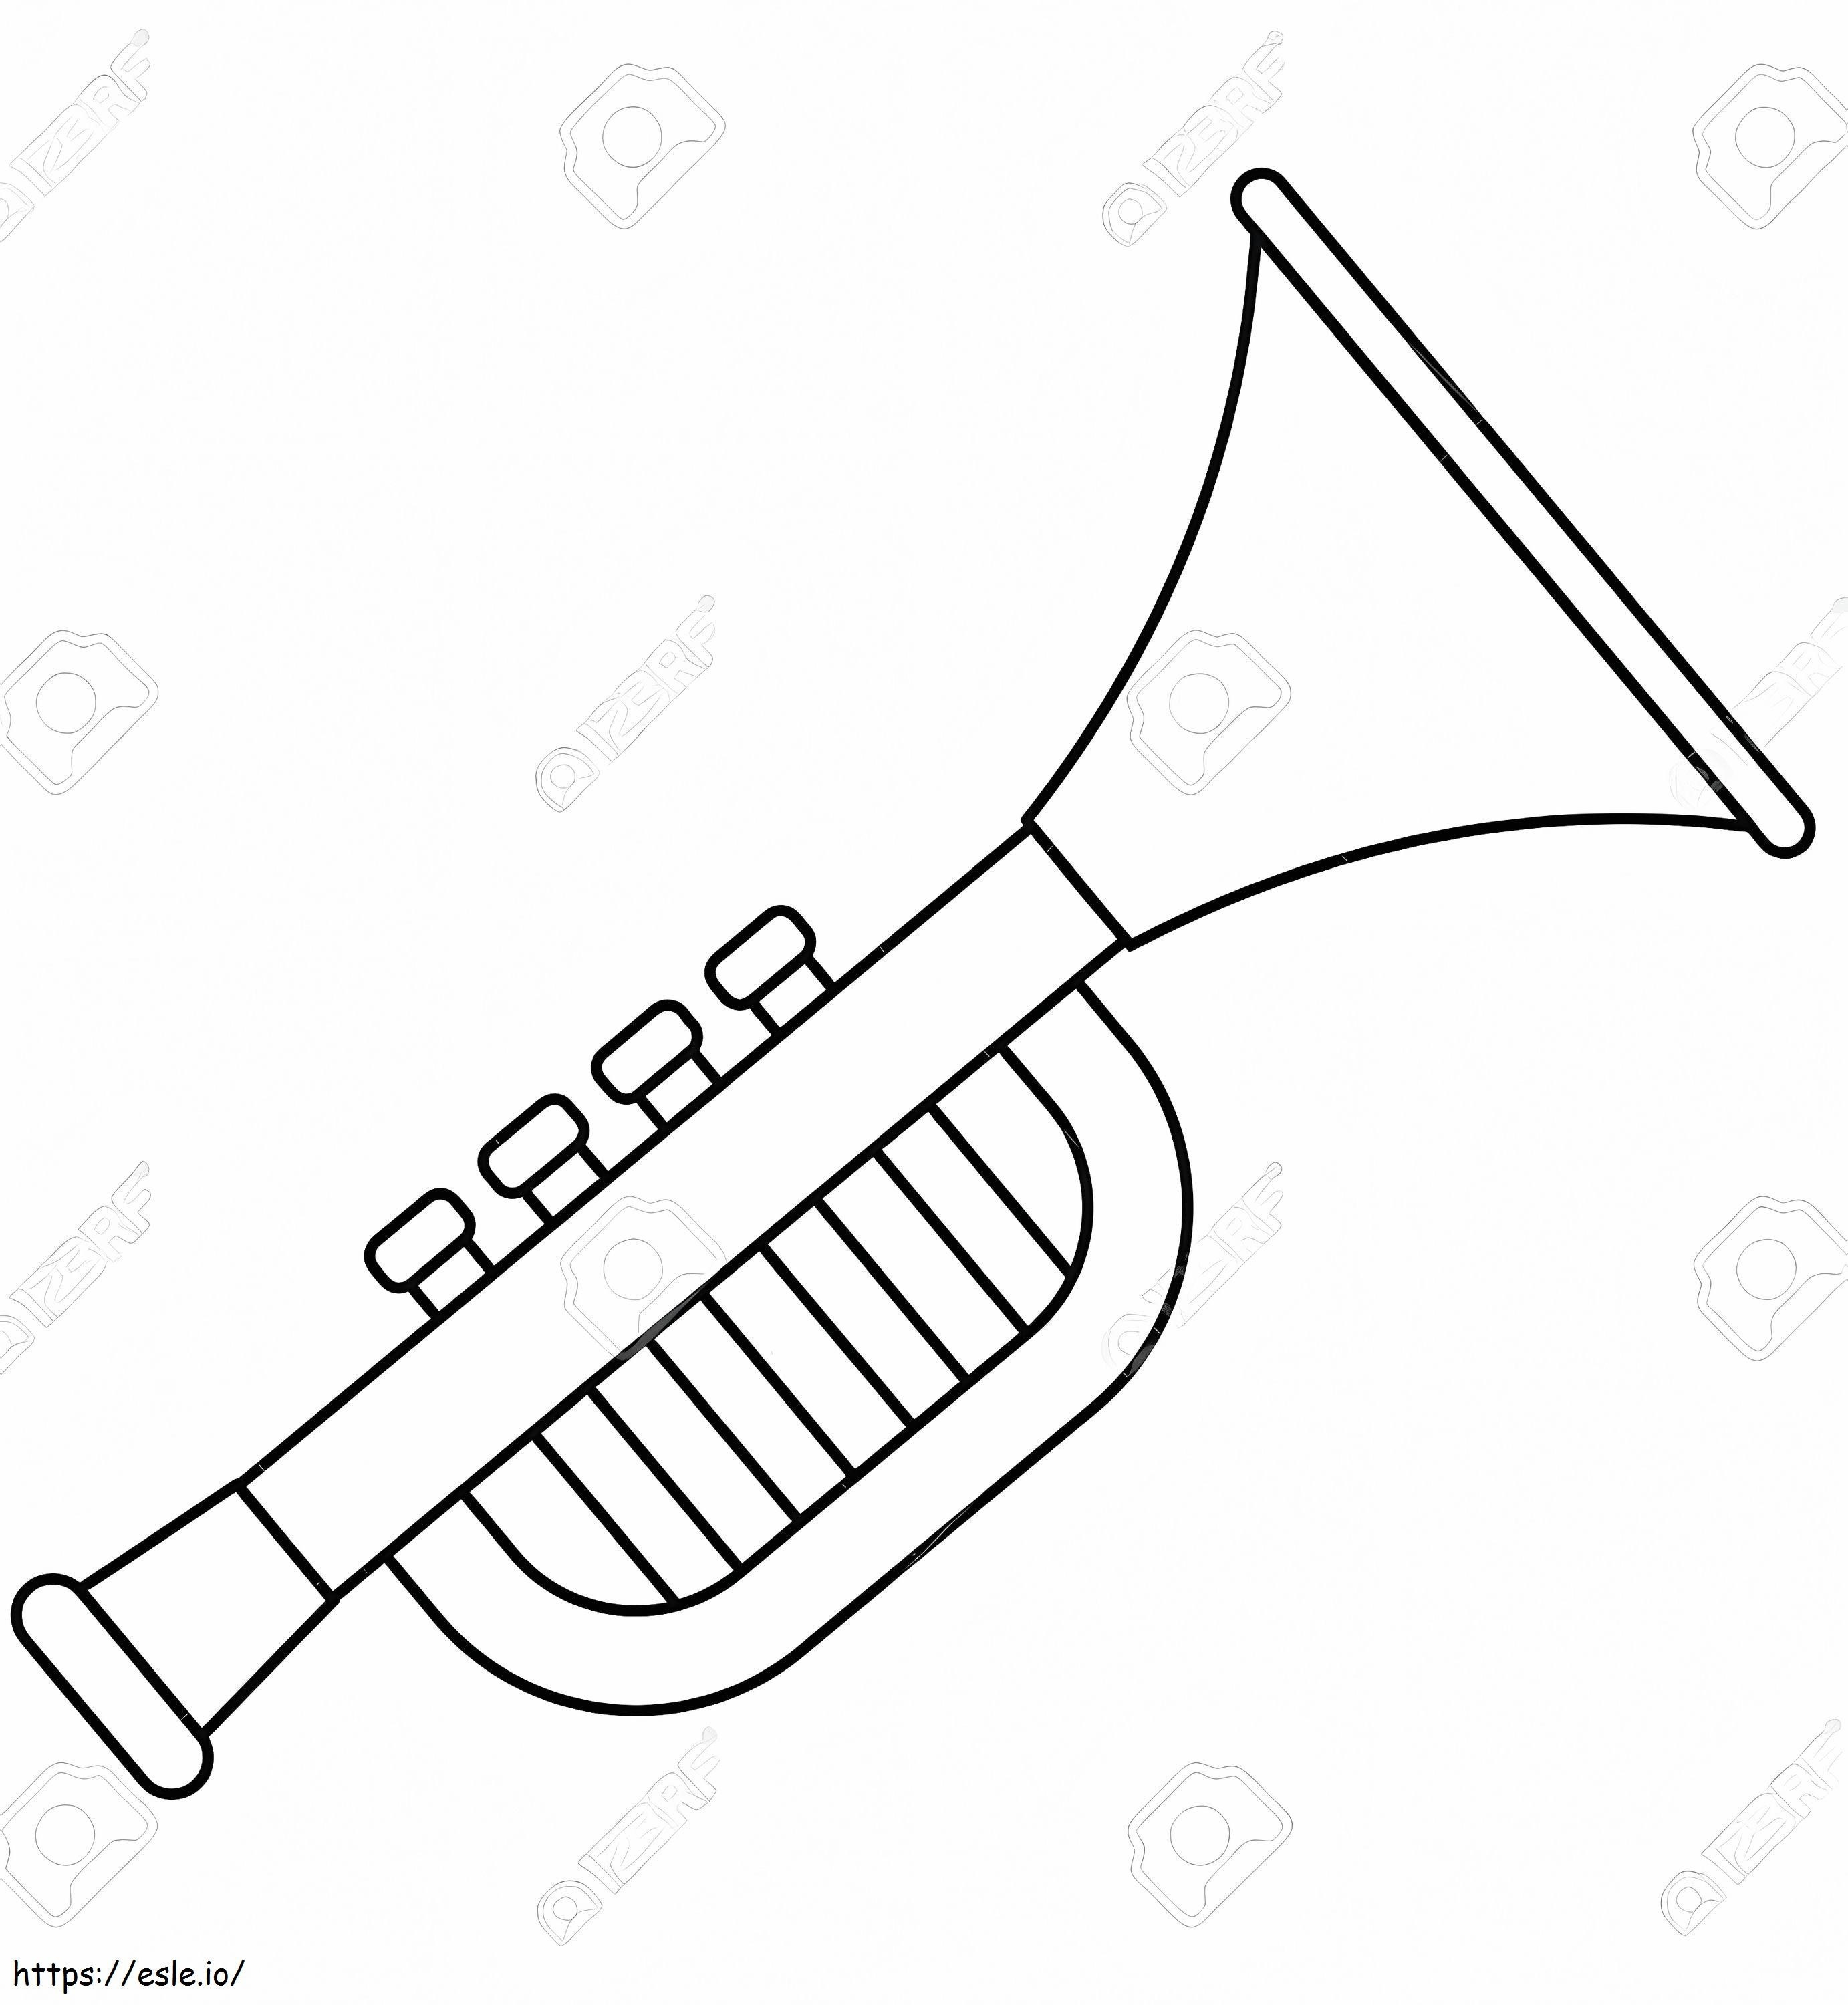 Basit Trompet 3 boyama